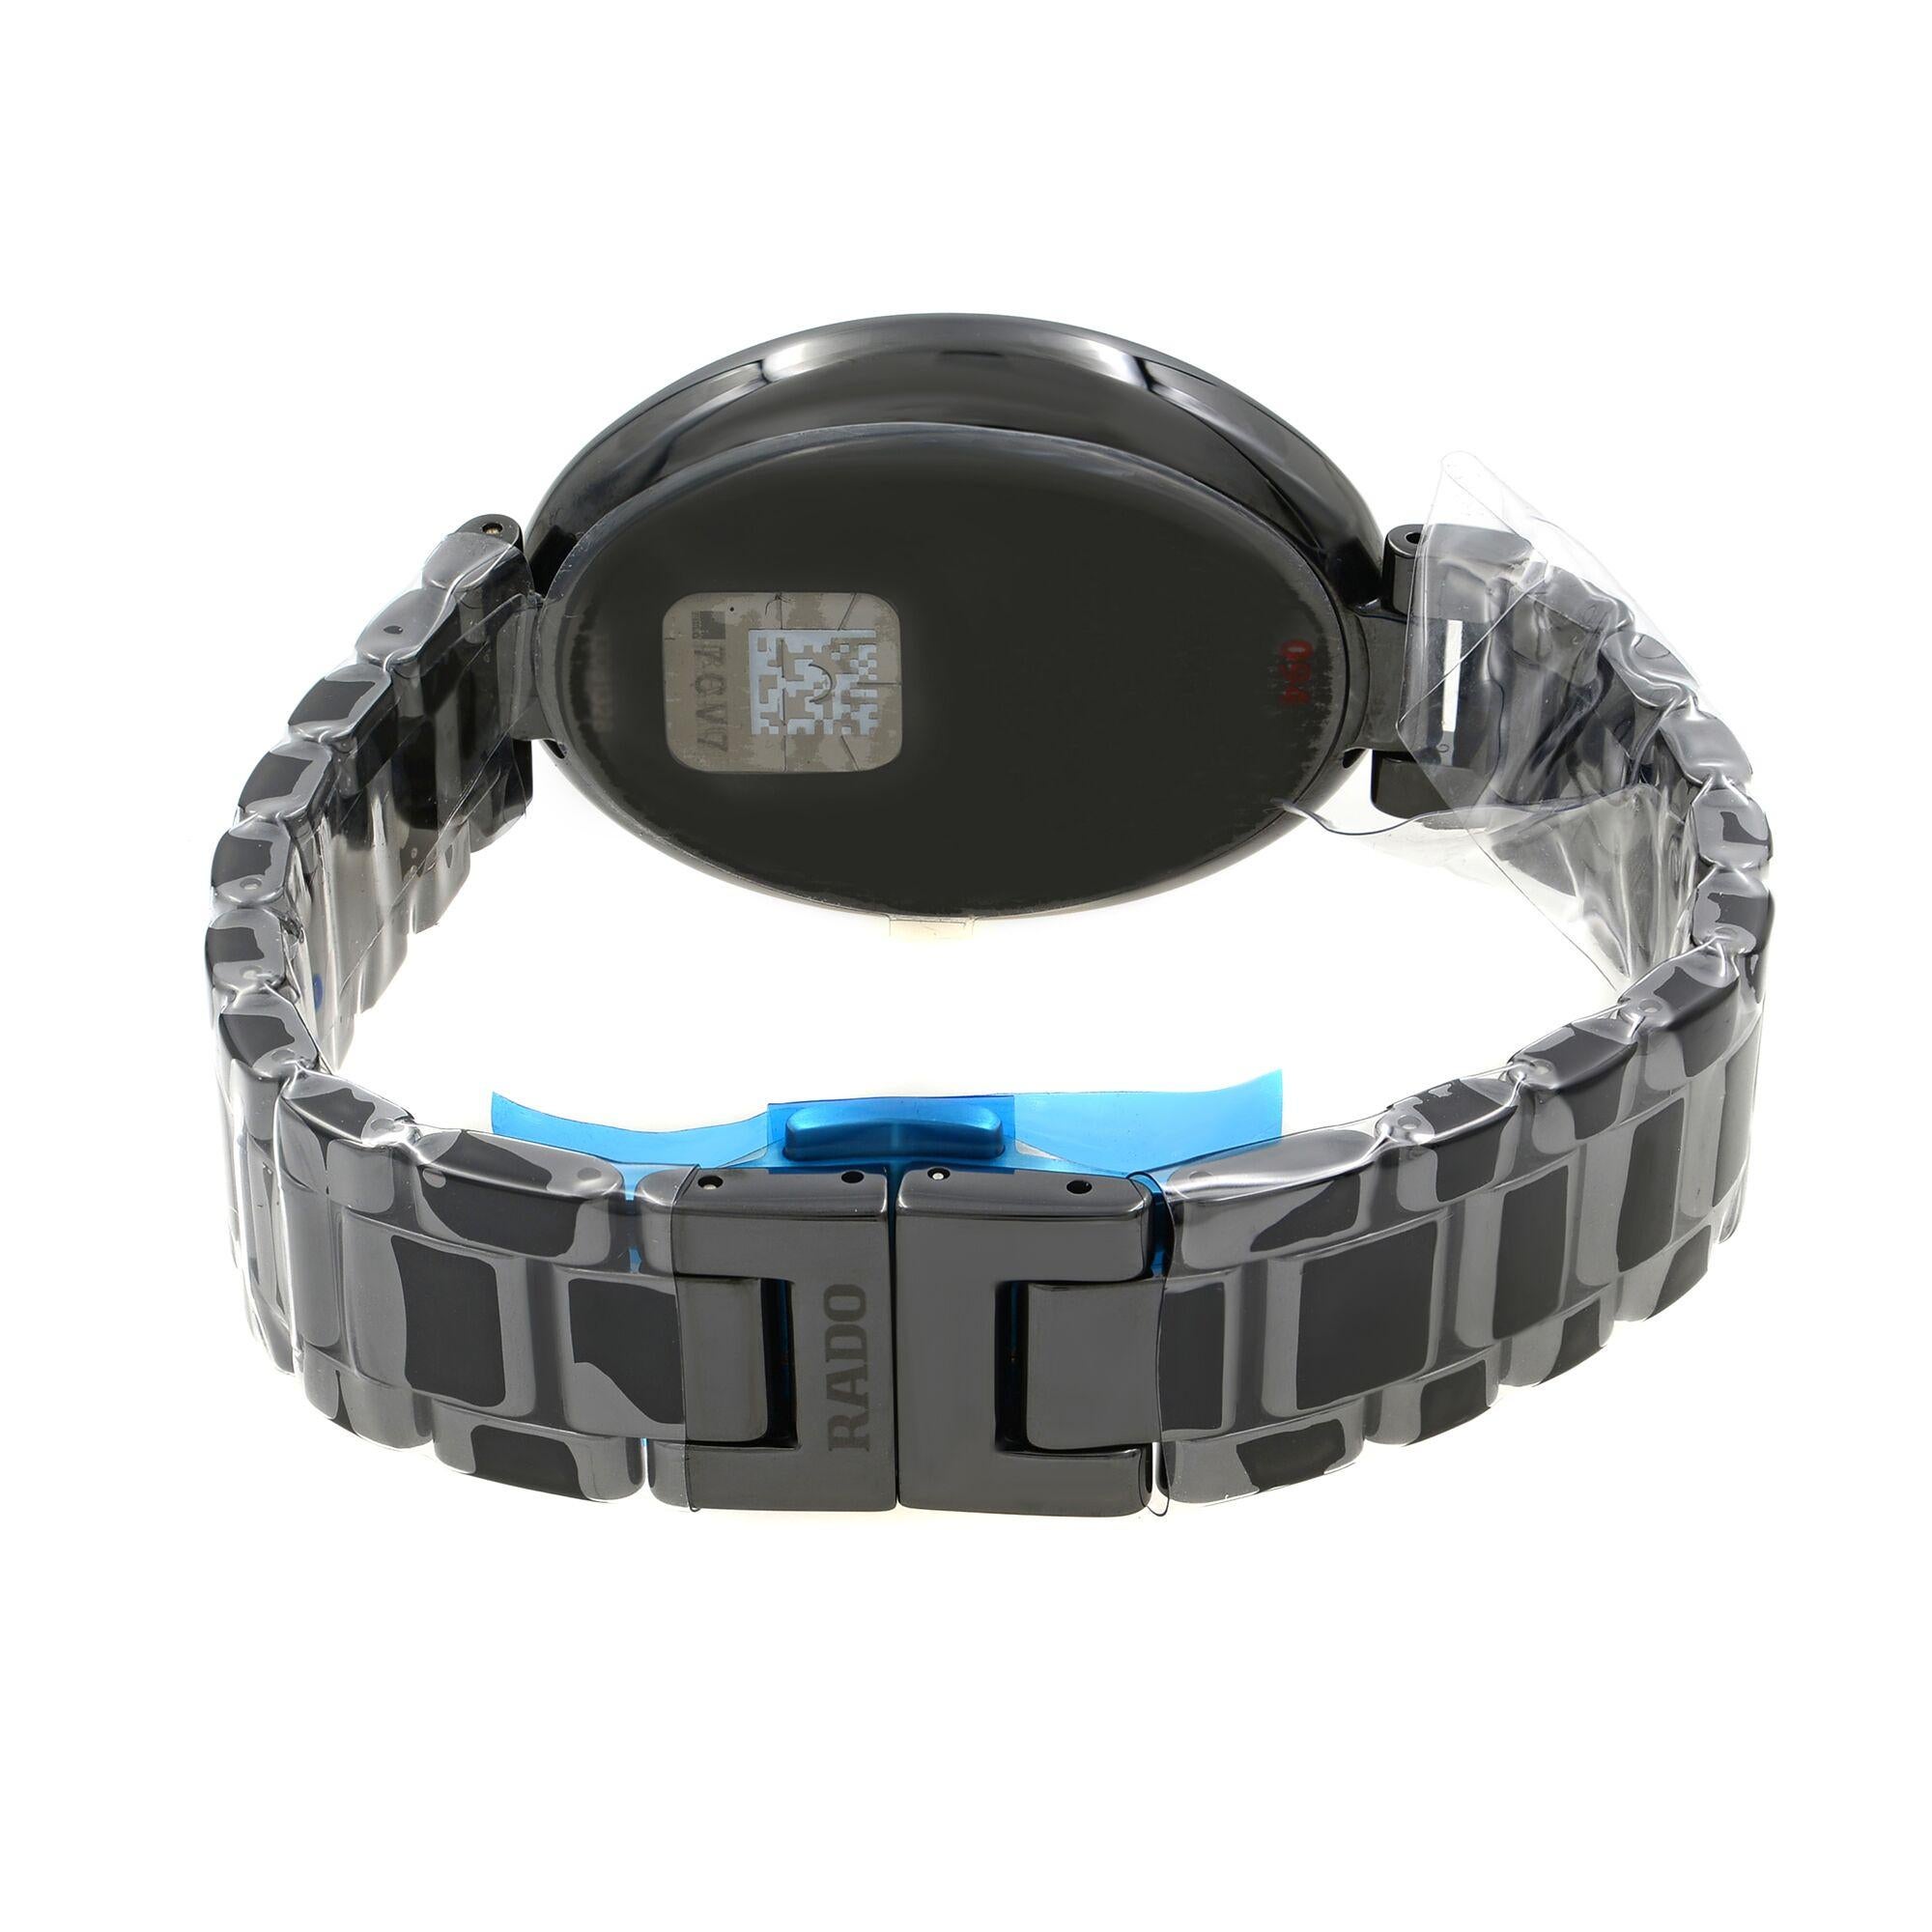 Rado Esenza Touch Black Dial Ladies Ceramic Quartz Watch R53093152 2